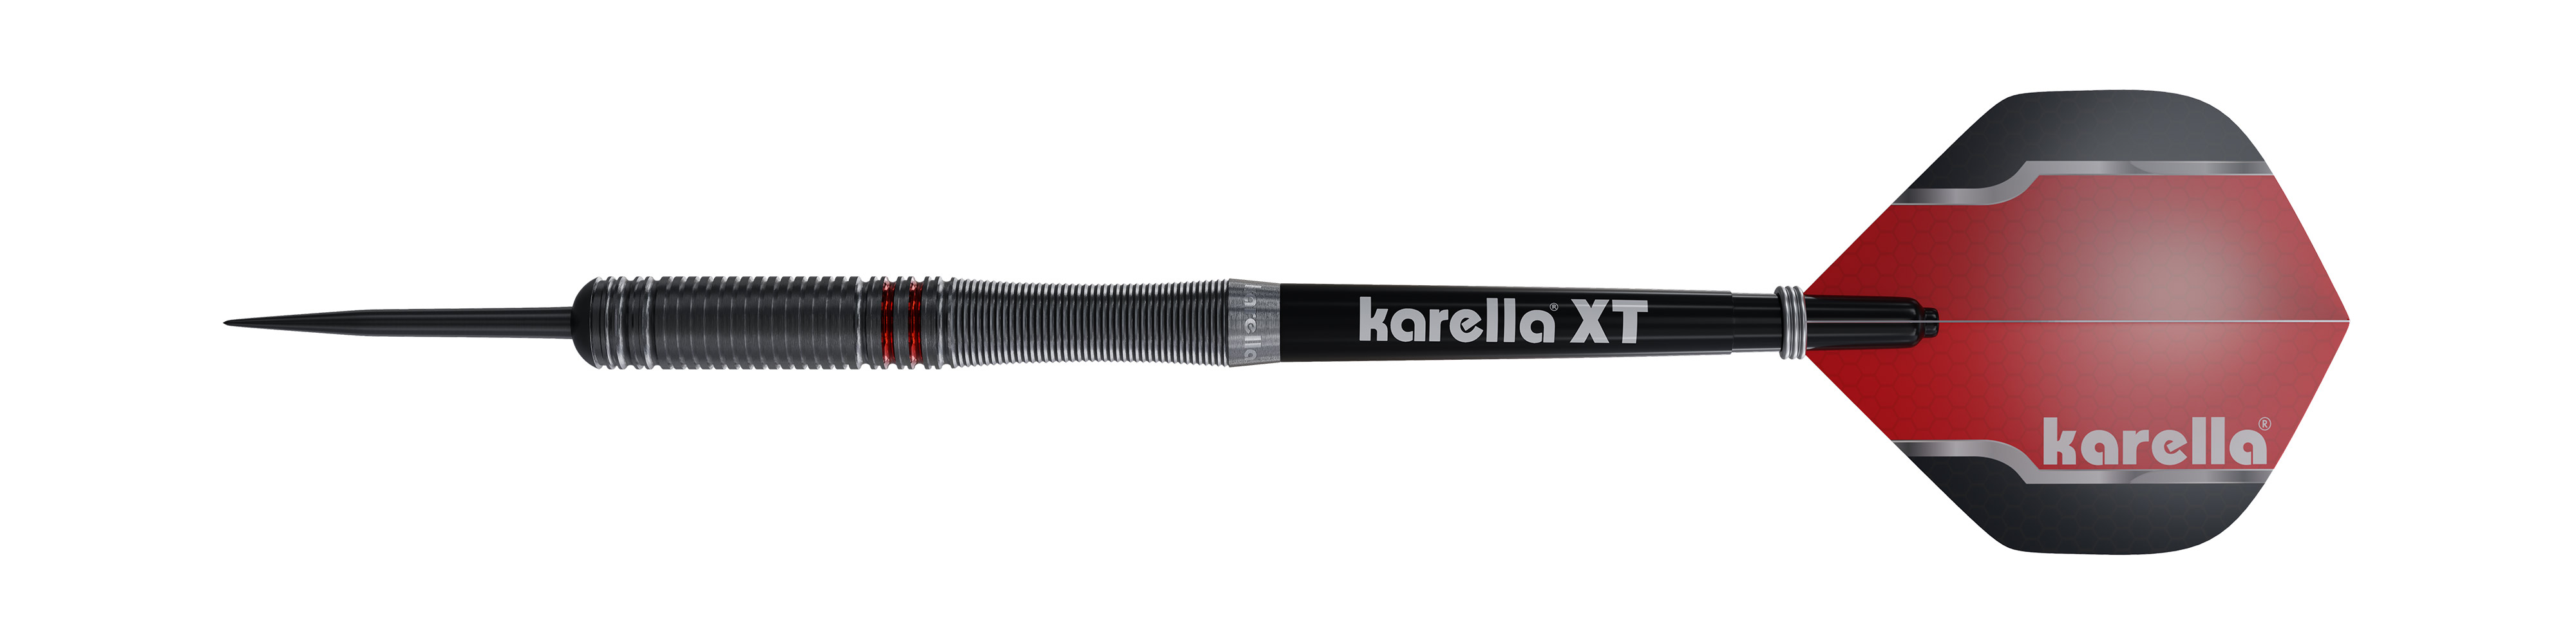 Stone dart Karella Fighter, black, 90% Tungsten, 22g or 24g